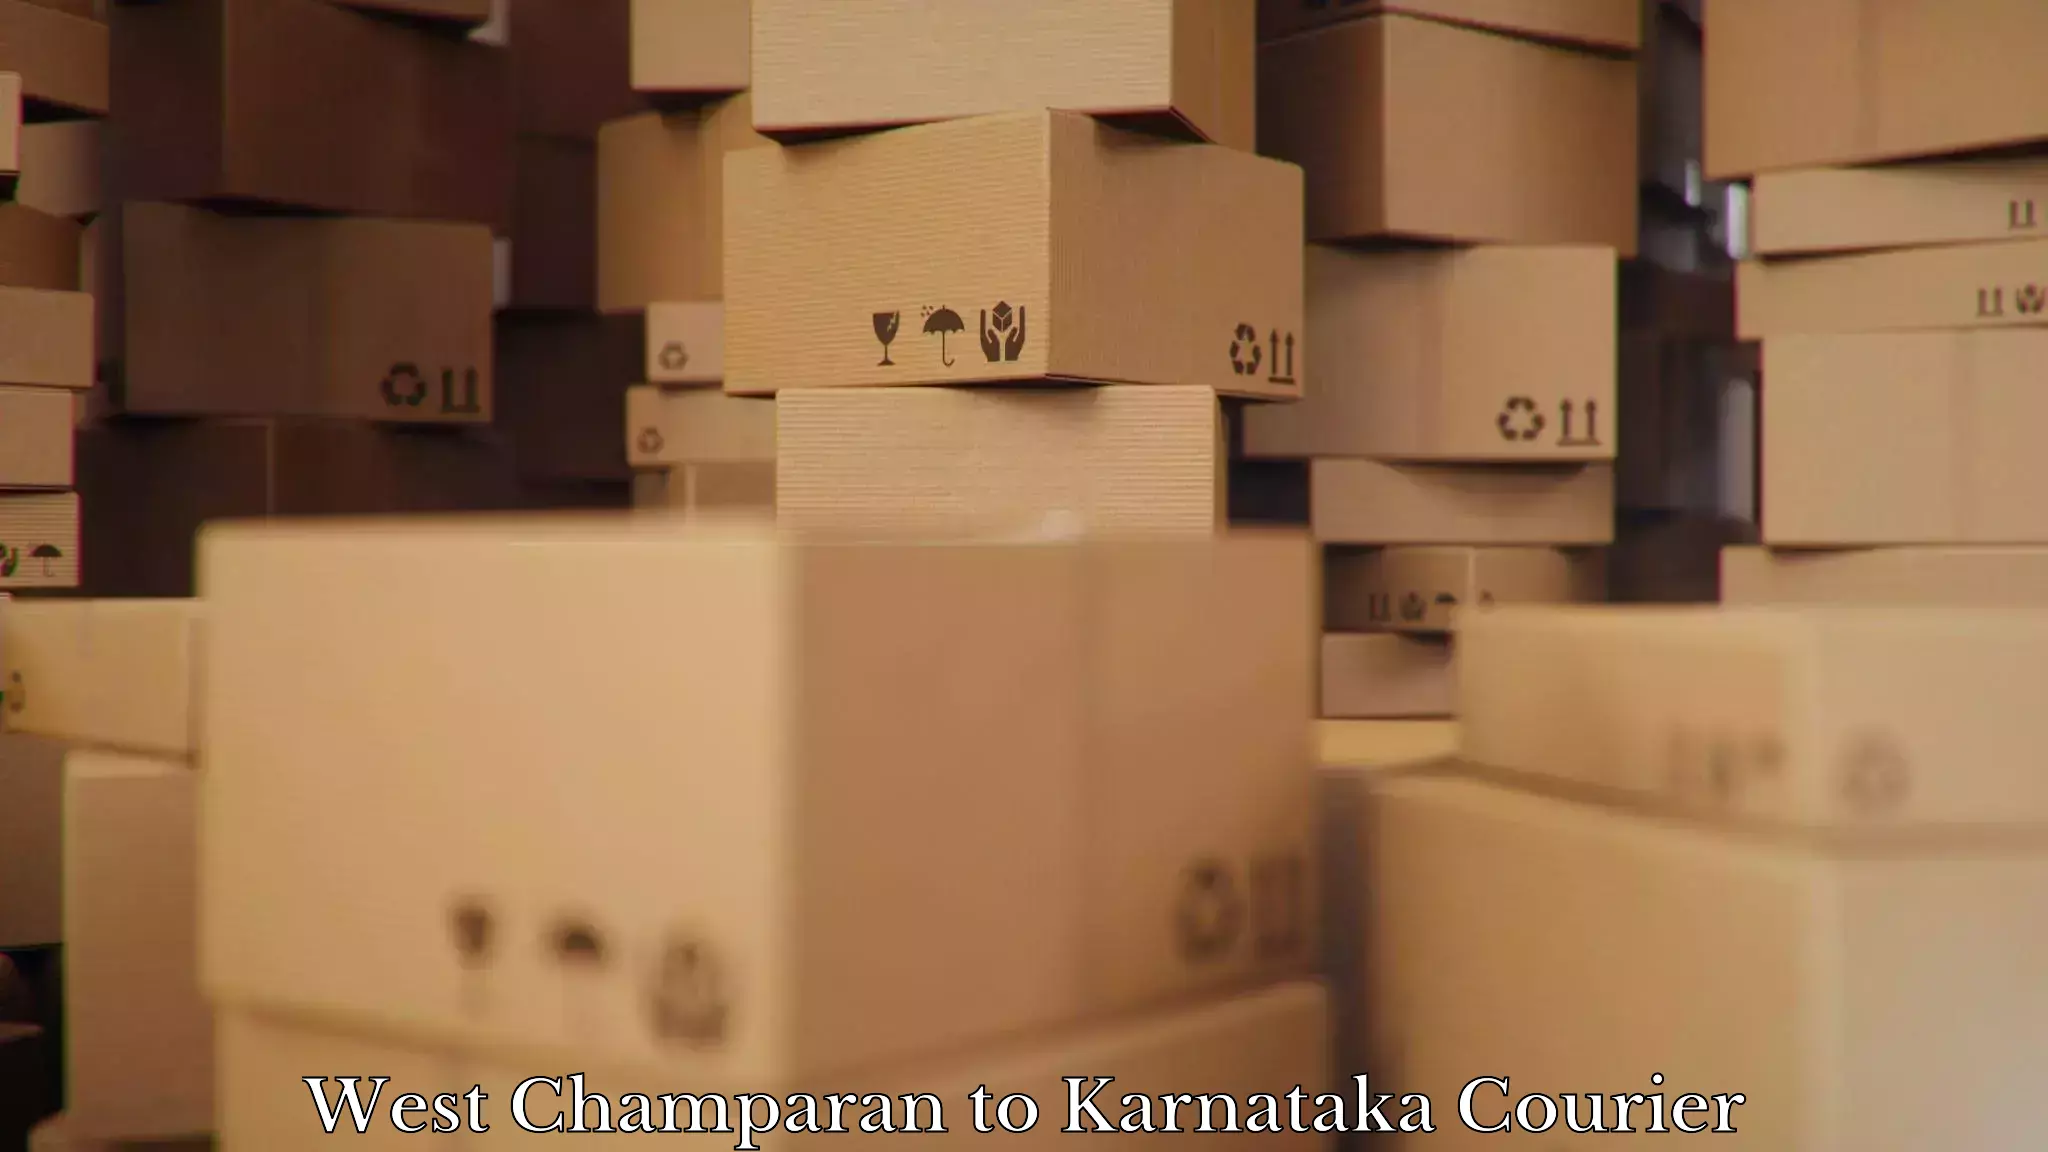 Nationwide furniture transport West Champaran to Karnataka